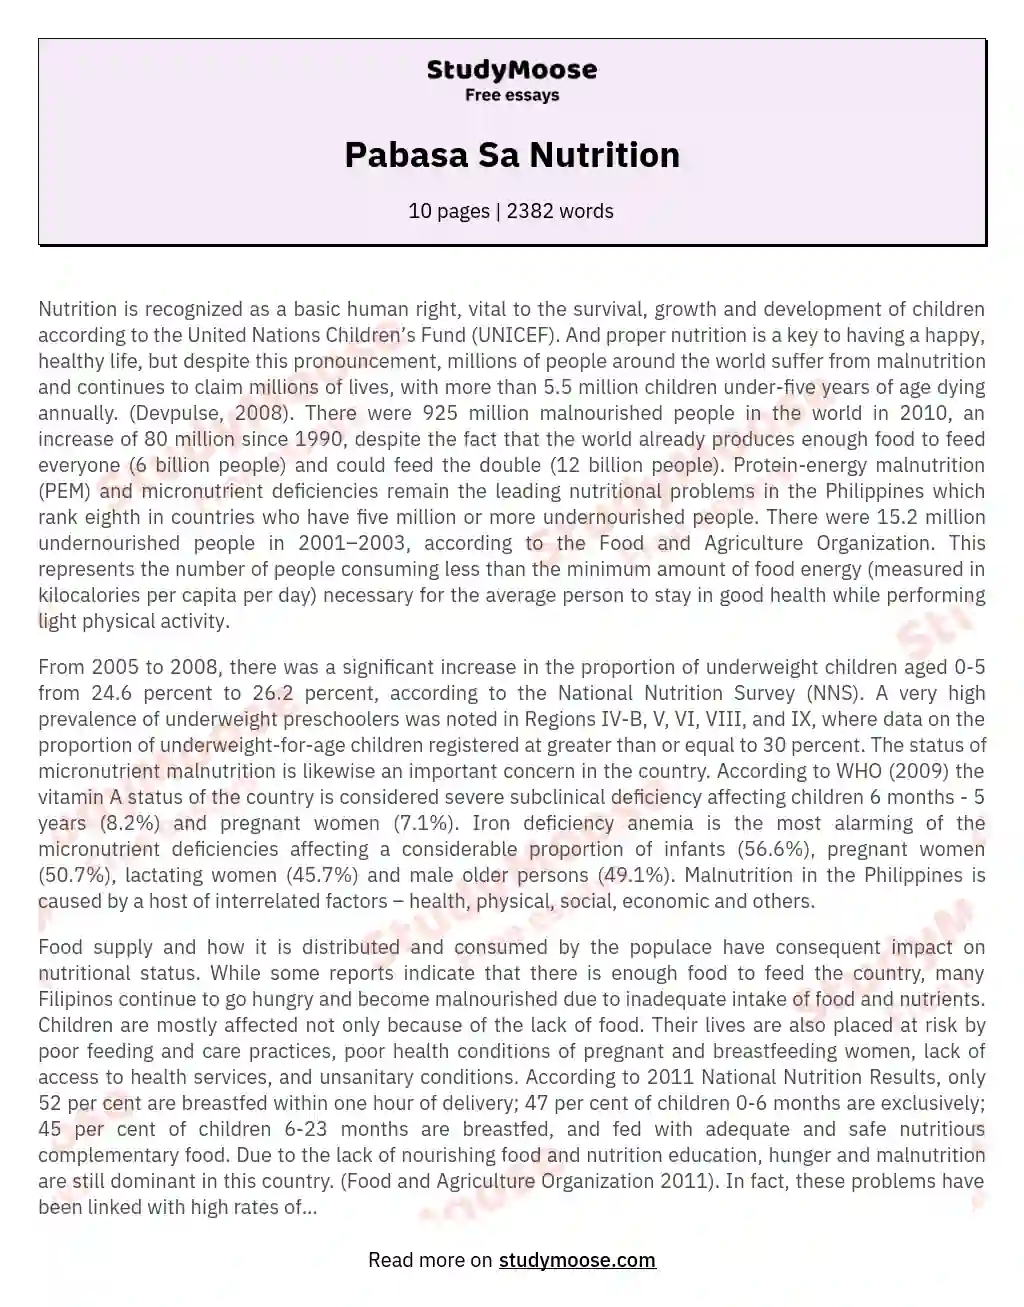 Pabasa Sa Nutrition essay